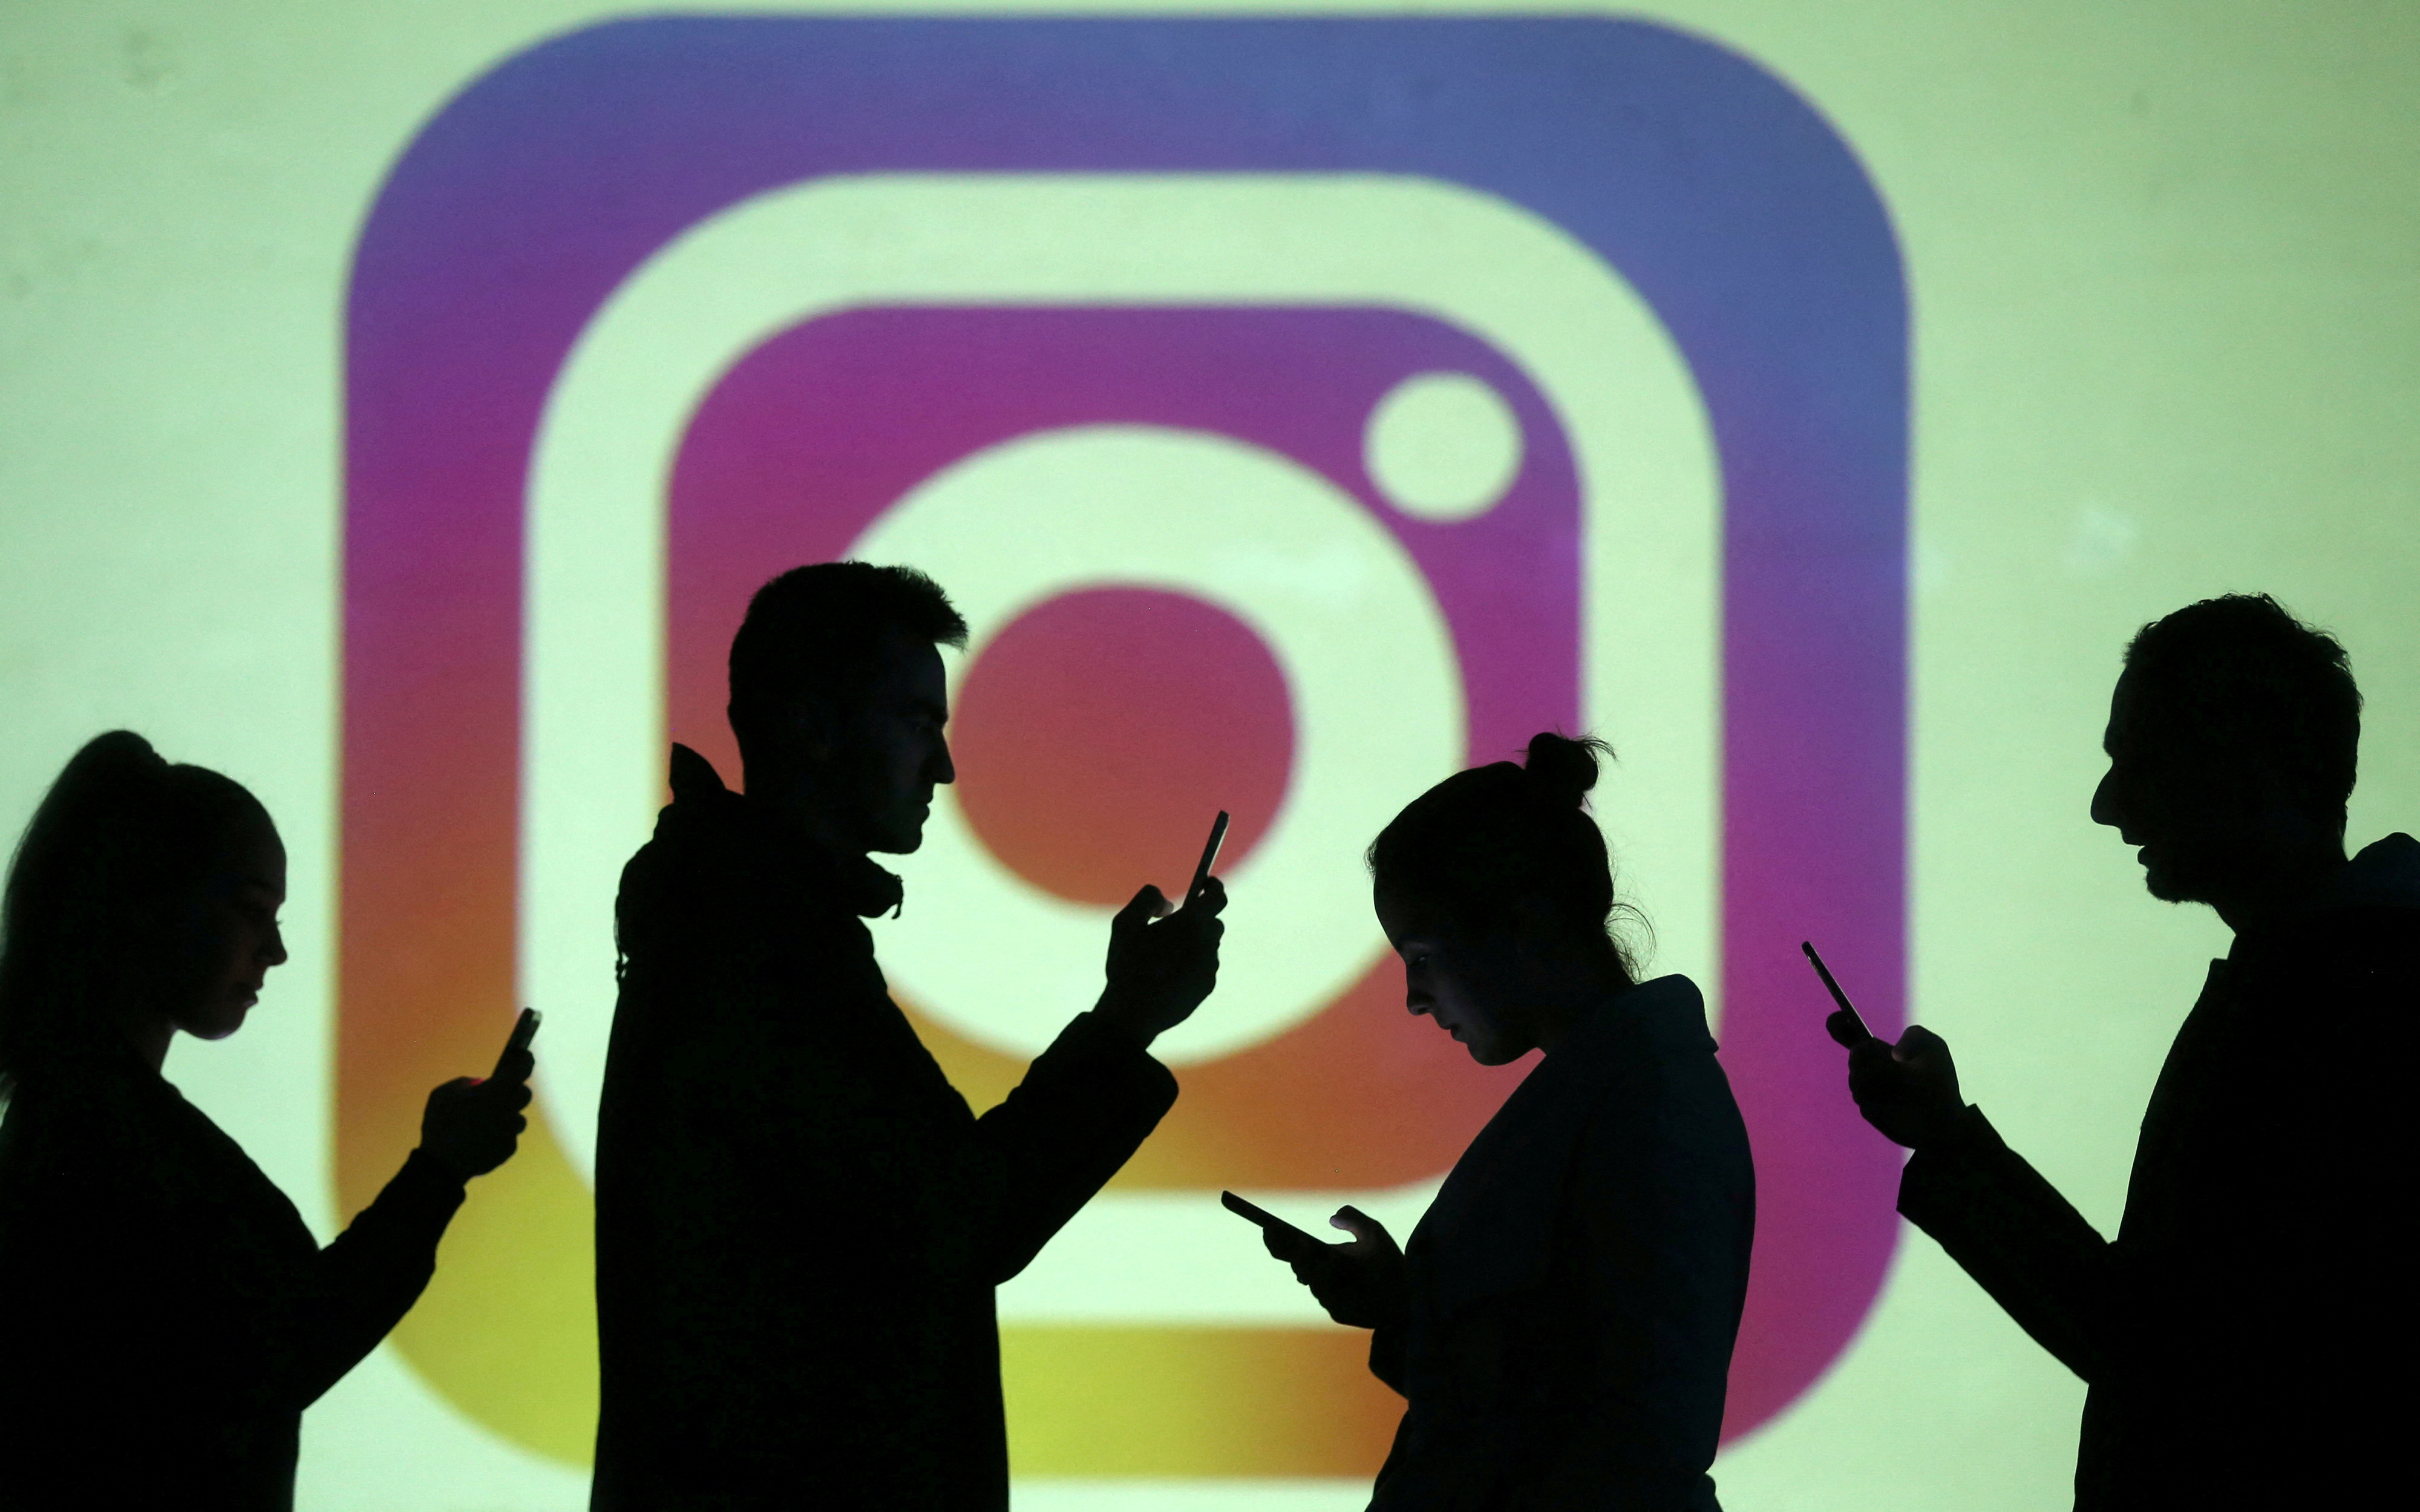 Instagram incluye fotos de perfil dinámicas con avatares 3D